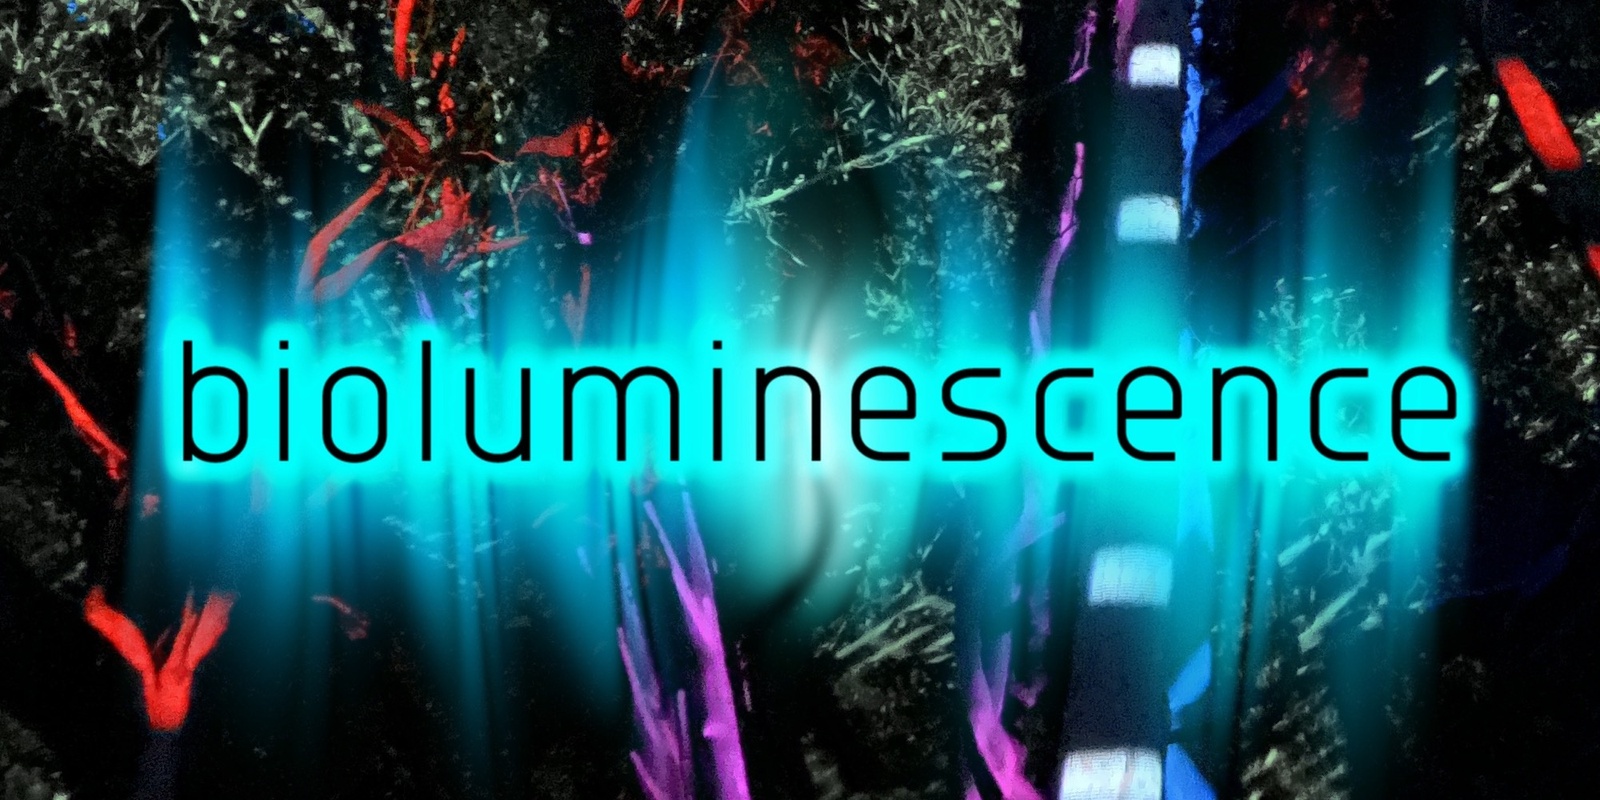 Banner image for Bioluminescence Workshops @ Falling Leaf Festival